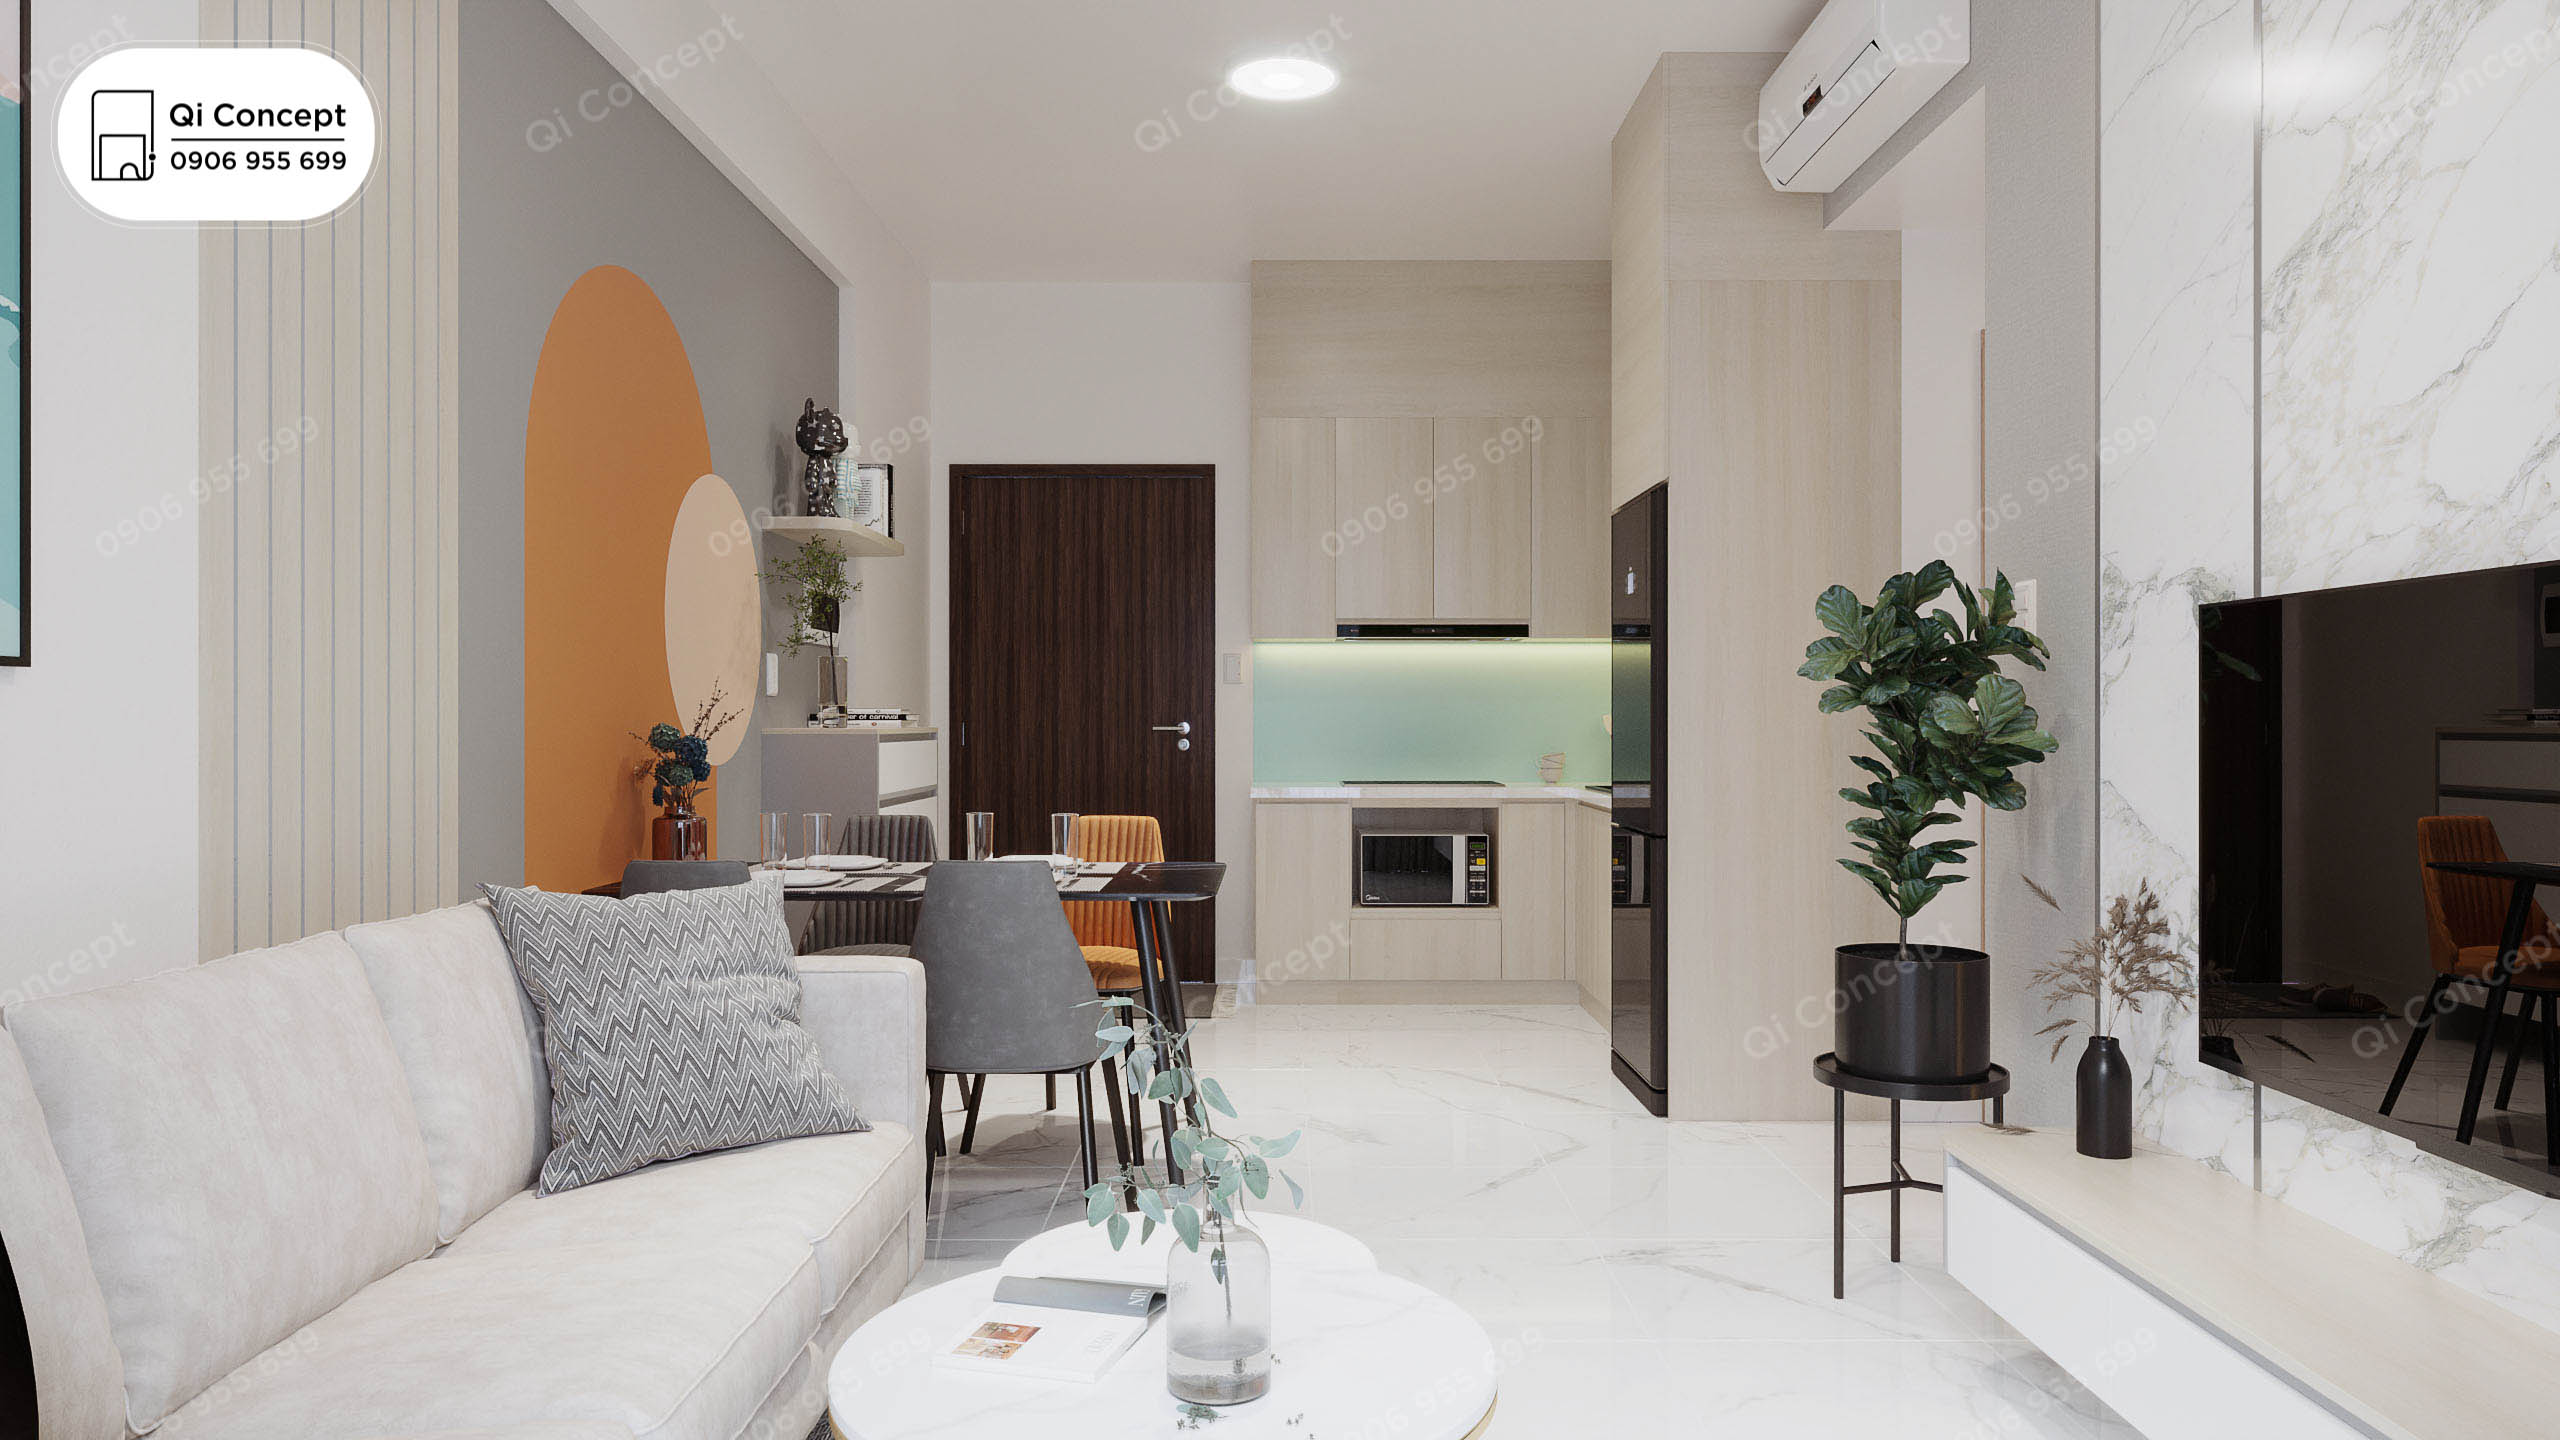 Thiết kế căn hộ Safira Khang Điền sẽ khiến bạn cảm thấy thoải mái với không gian mở rộng, ánh sáng tự nhiên và một phong cách nội thất đẳng cấp. Hãy khám phá ngay bức tranh cuốn hút này!